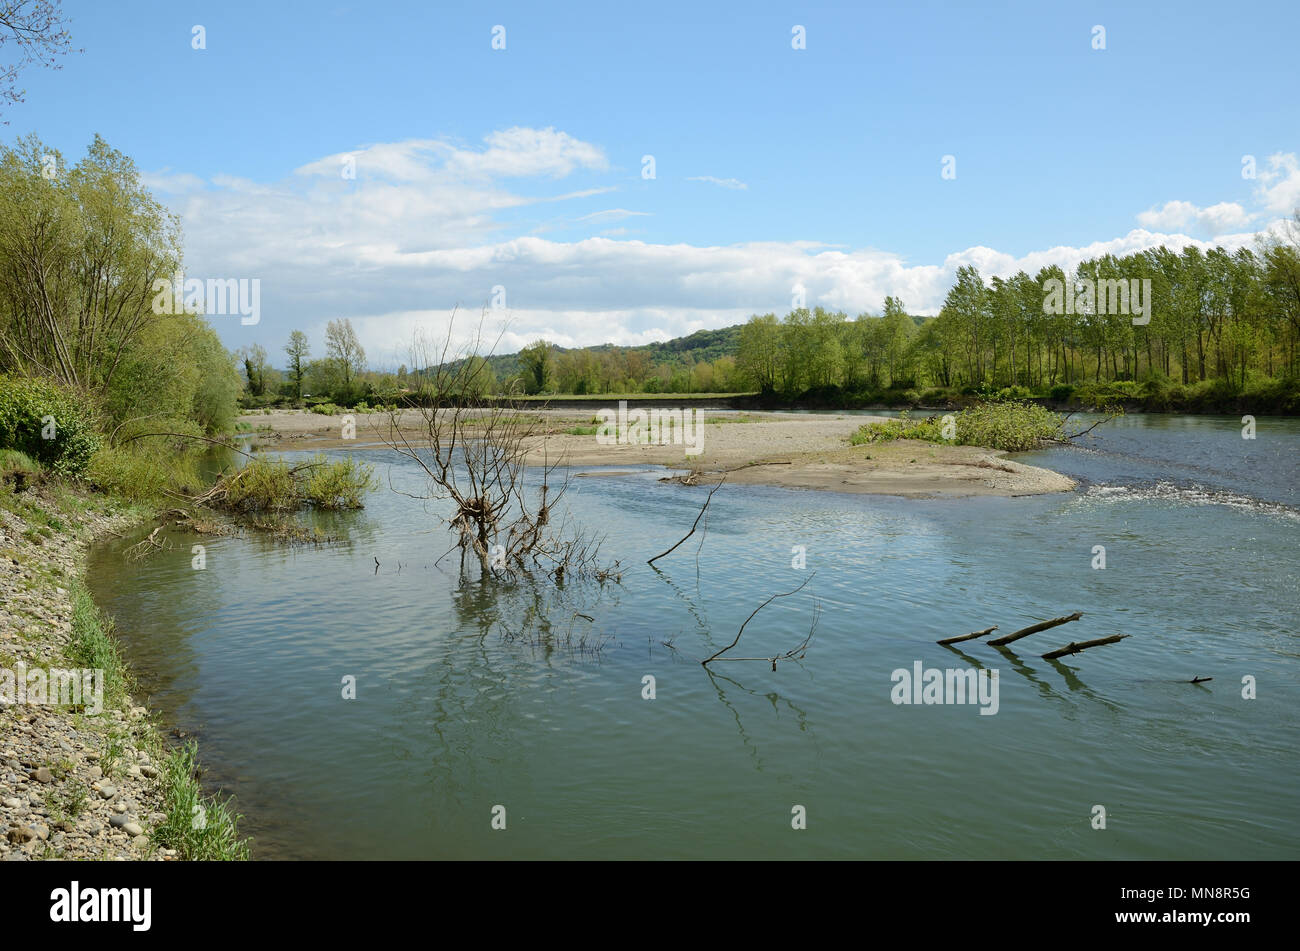 Libremente serpenteante río Gave de Pau Foto de stock